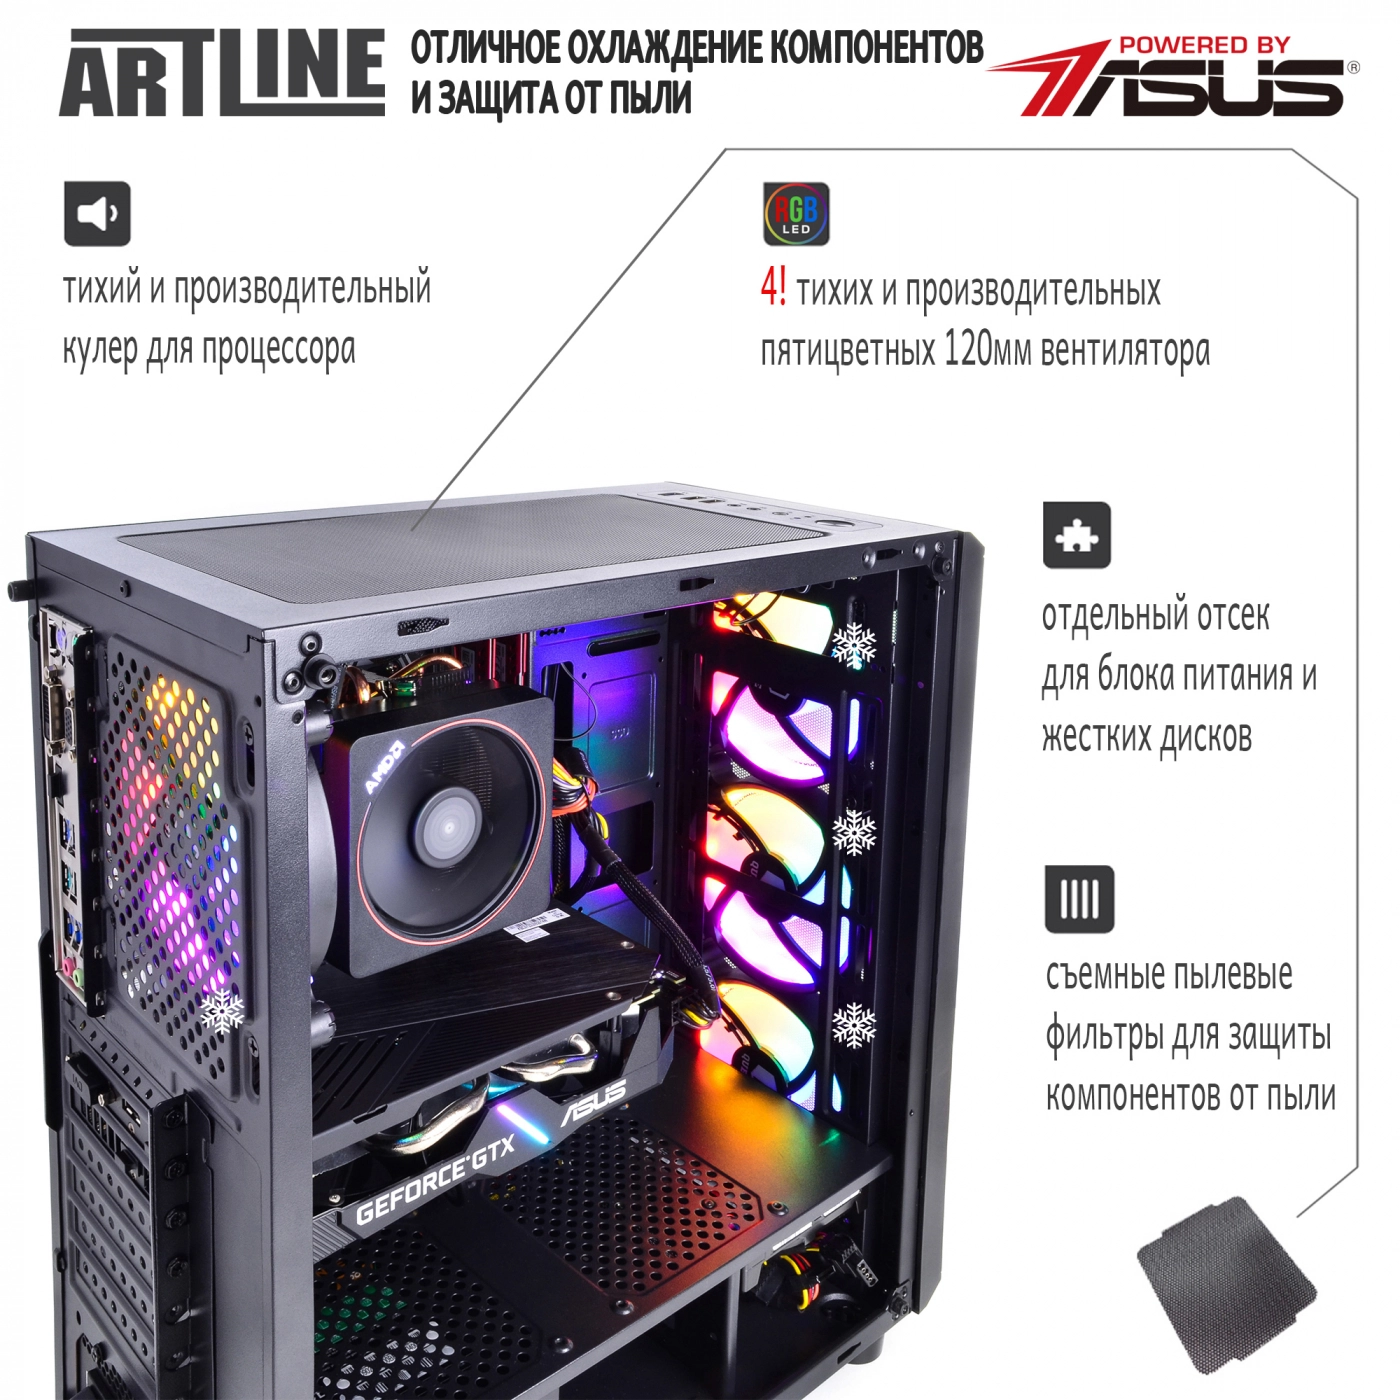 Купить Компьютер ARTLINE Gaming X64v07 - фото 3